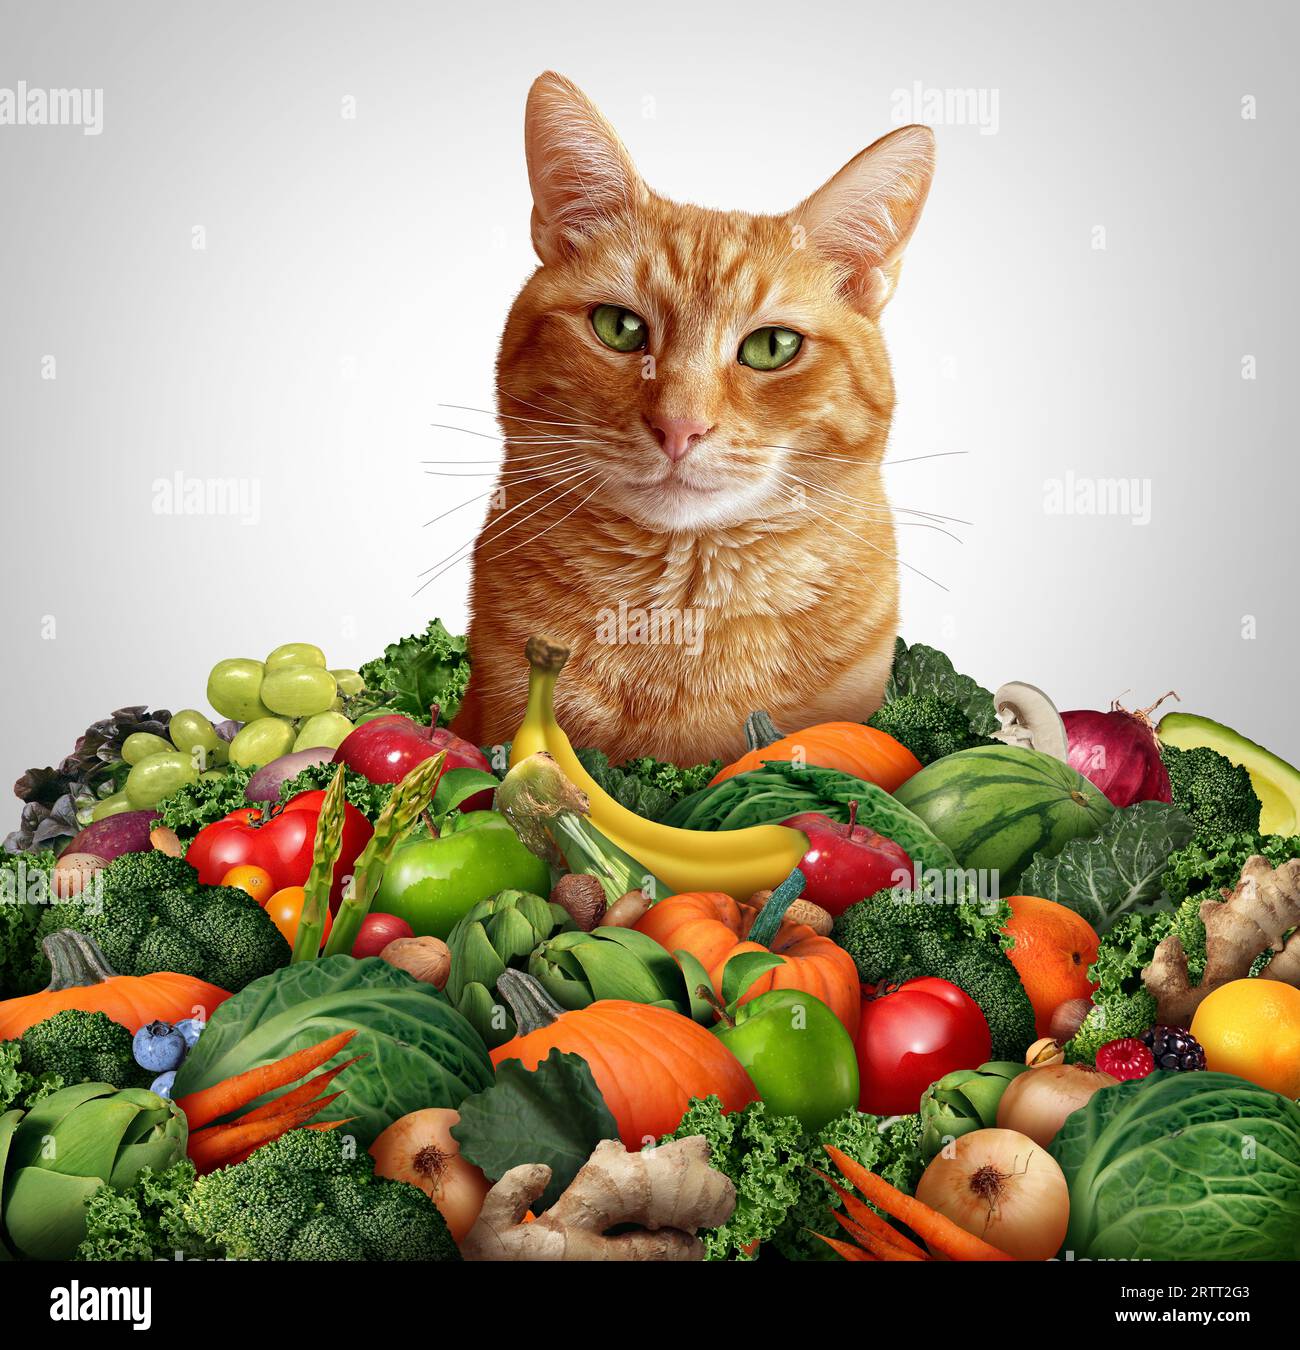 Katze Vegane Ernährung und gesundheitliche Vorteile von Katzen essen Obst und Gemüse für pflanzliche Ernährung als grüne Alternative Mahlzeit für Katzen Haustiere als grünes Gemüse Stockfoto